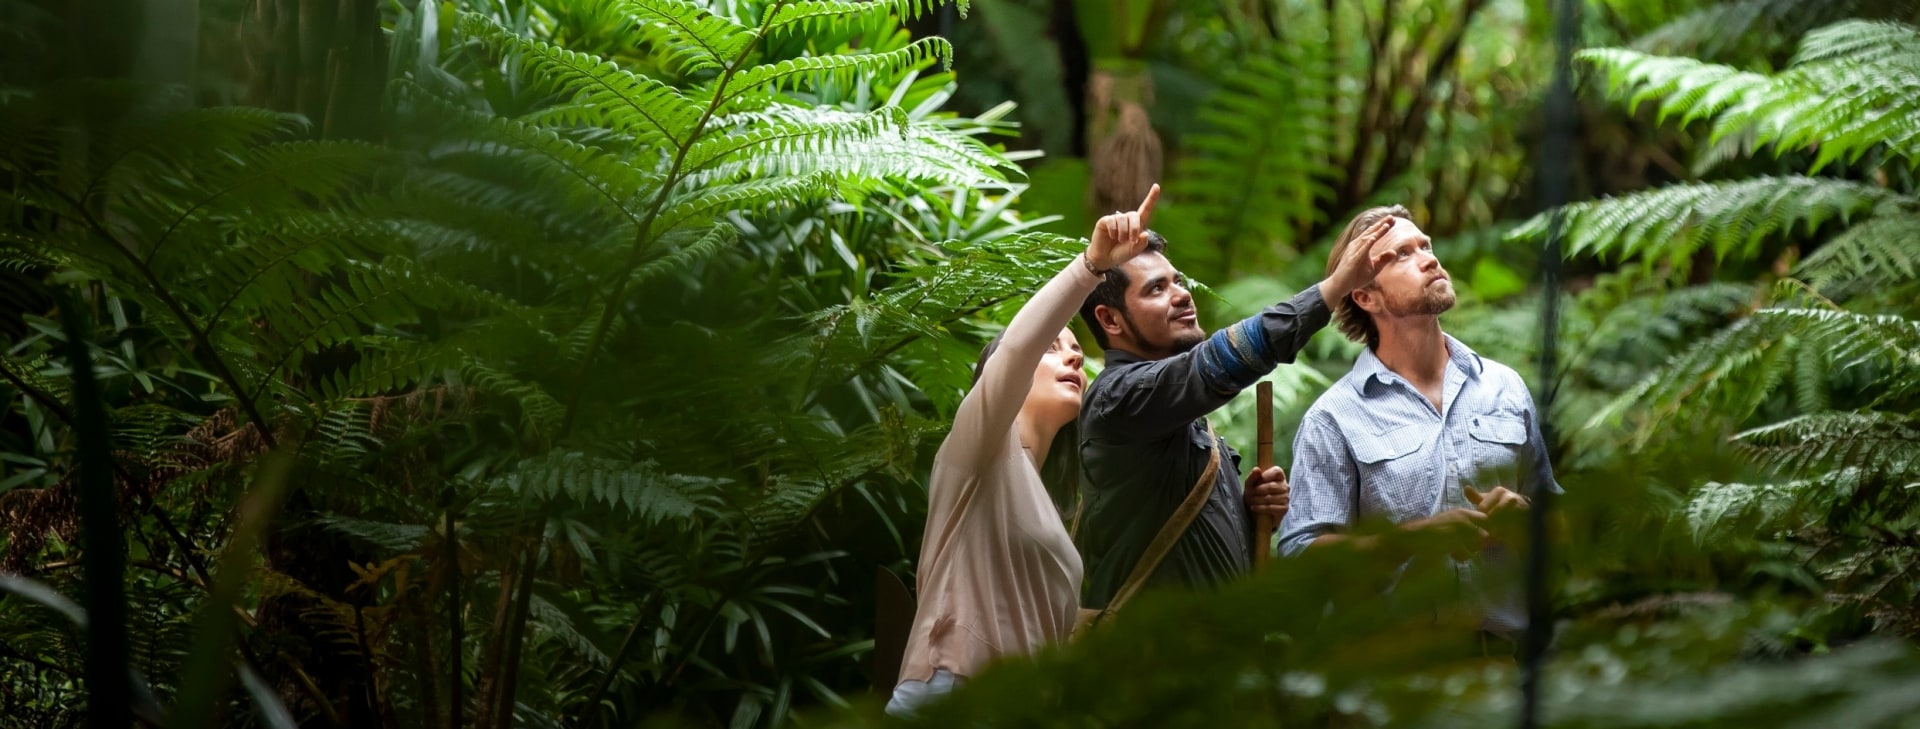 ビクトリア州、メルボルン、王立植物園でのアボリジナル・ヘリテージウォーク © Tourism Australia